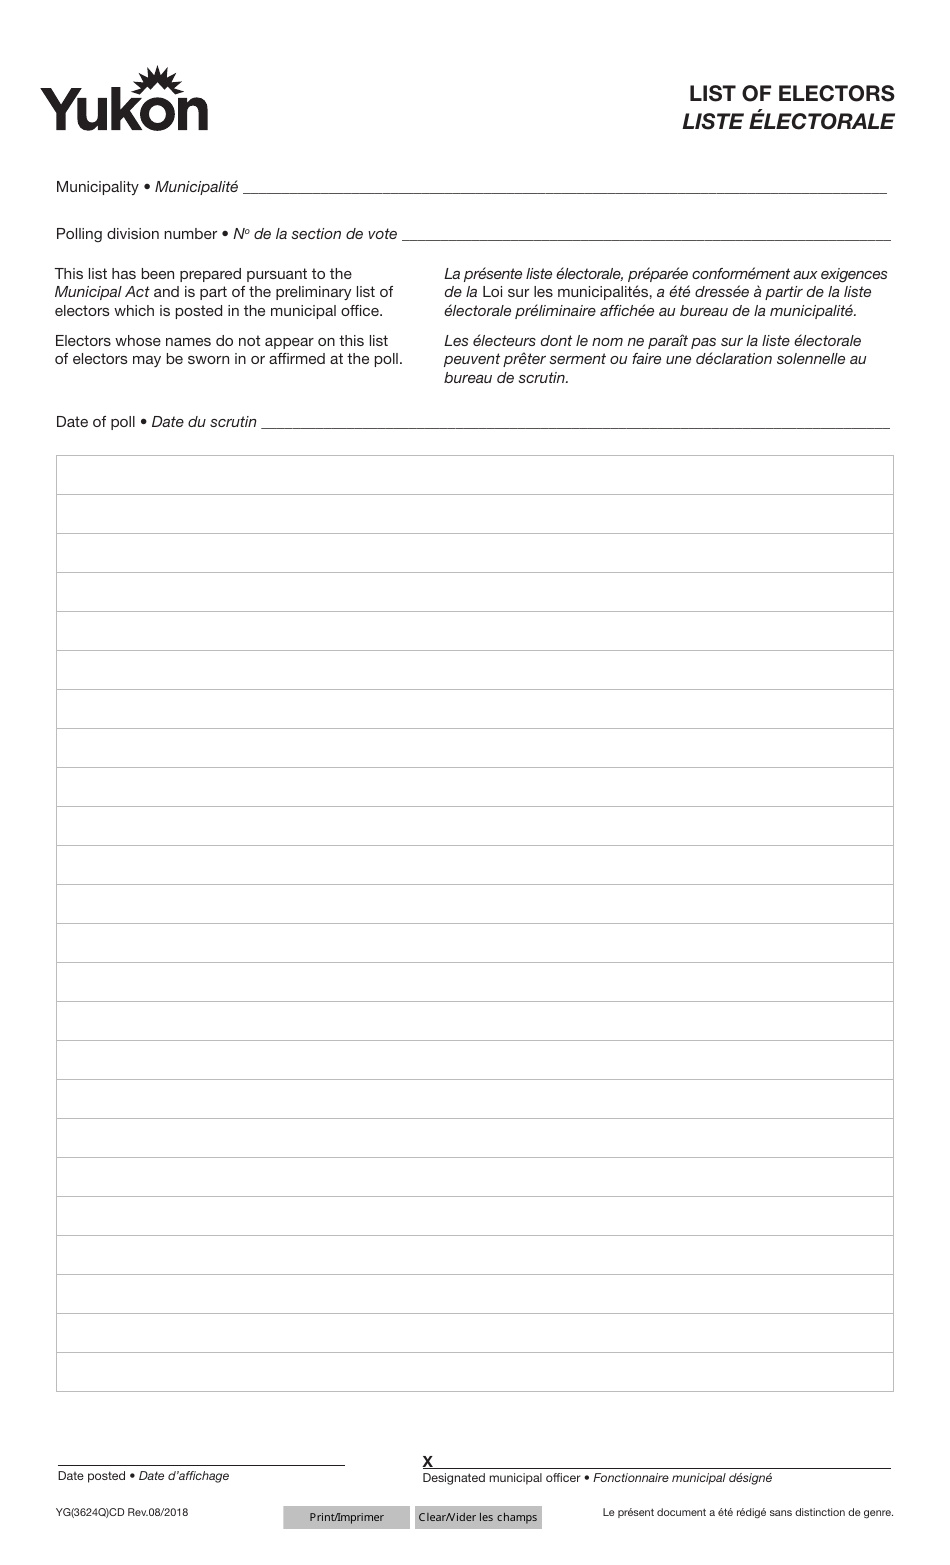 Form YG3624 List of Electors - Yukon, Canada (English / French), Page 1